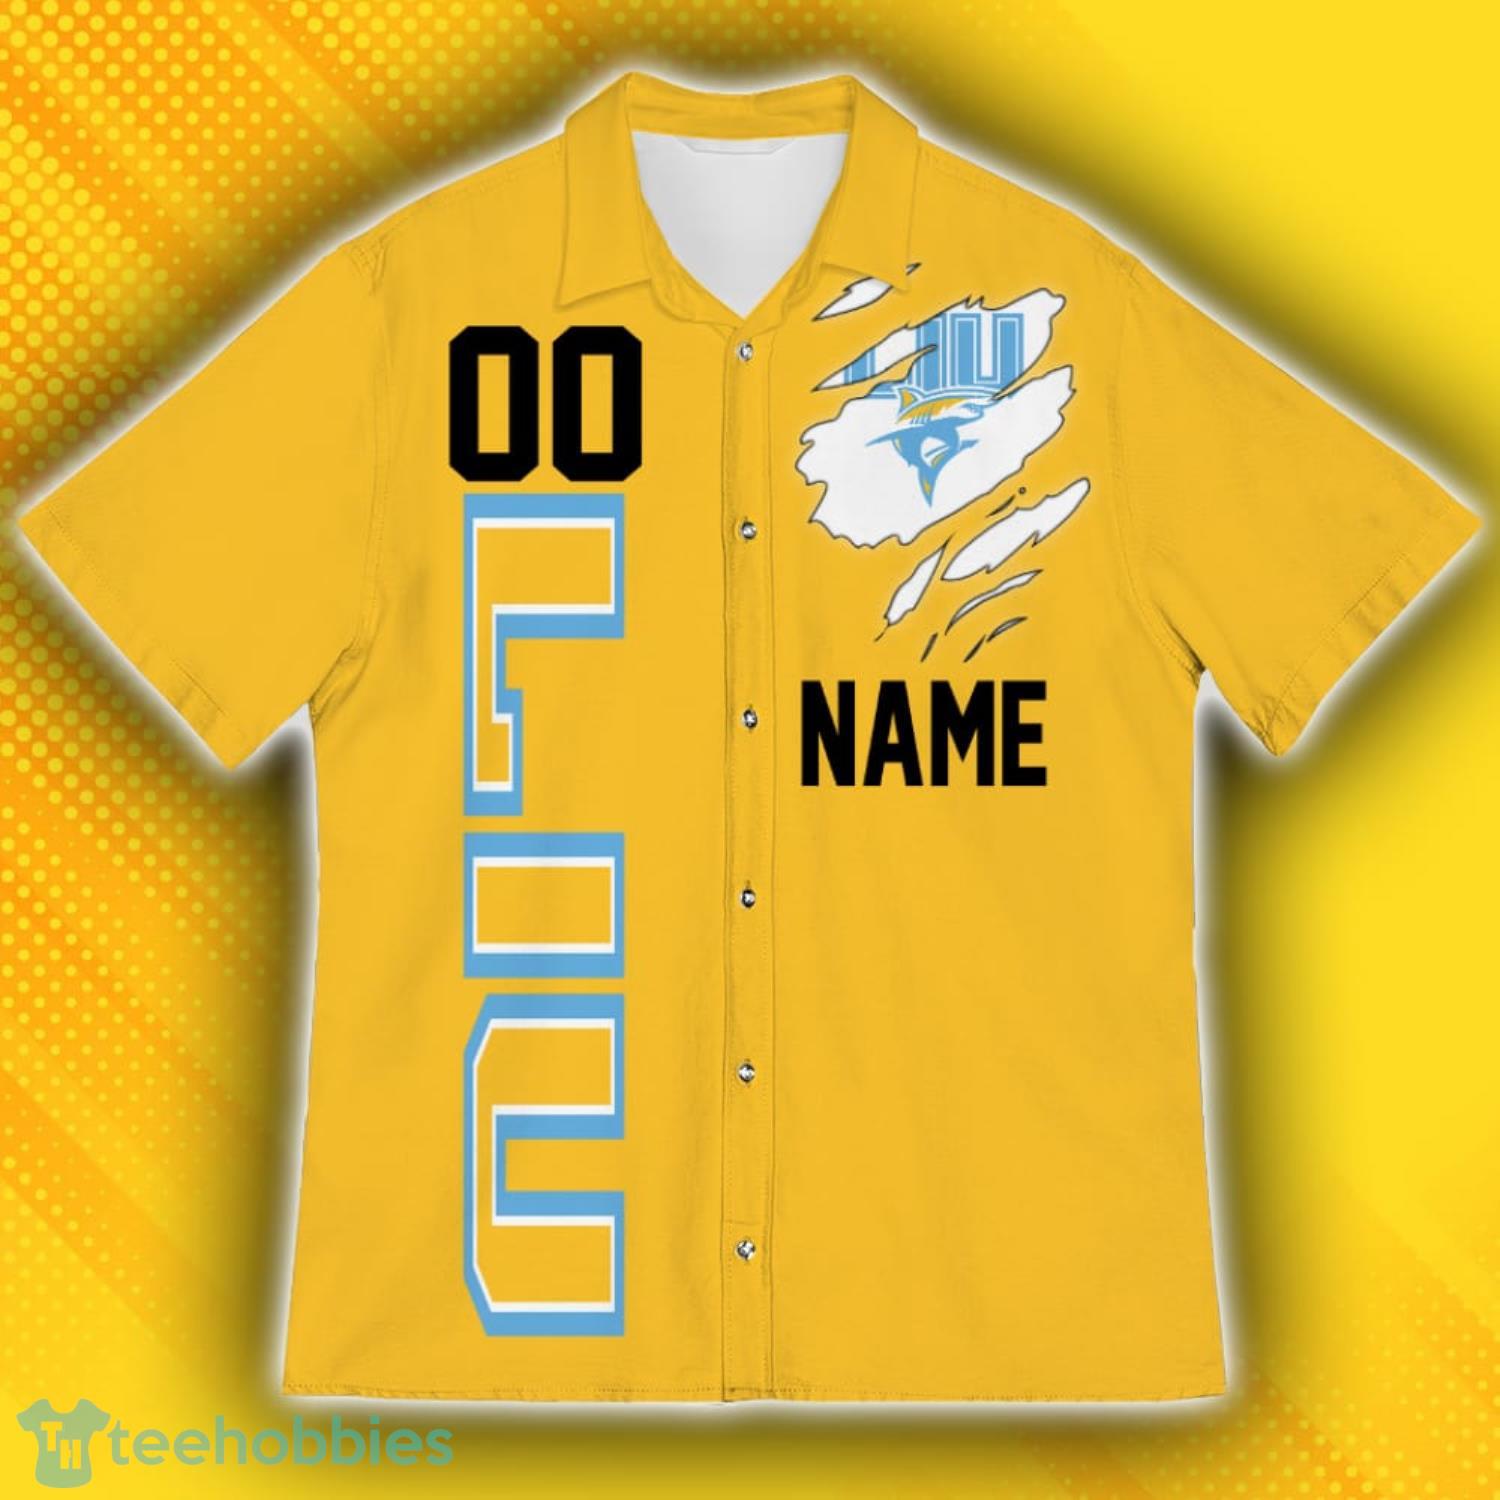 LIU Brooklyn Blackbirds Sports American Hawaiian Football Hawaiian Shirt Custom Name For Fans Product Photo 2